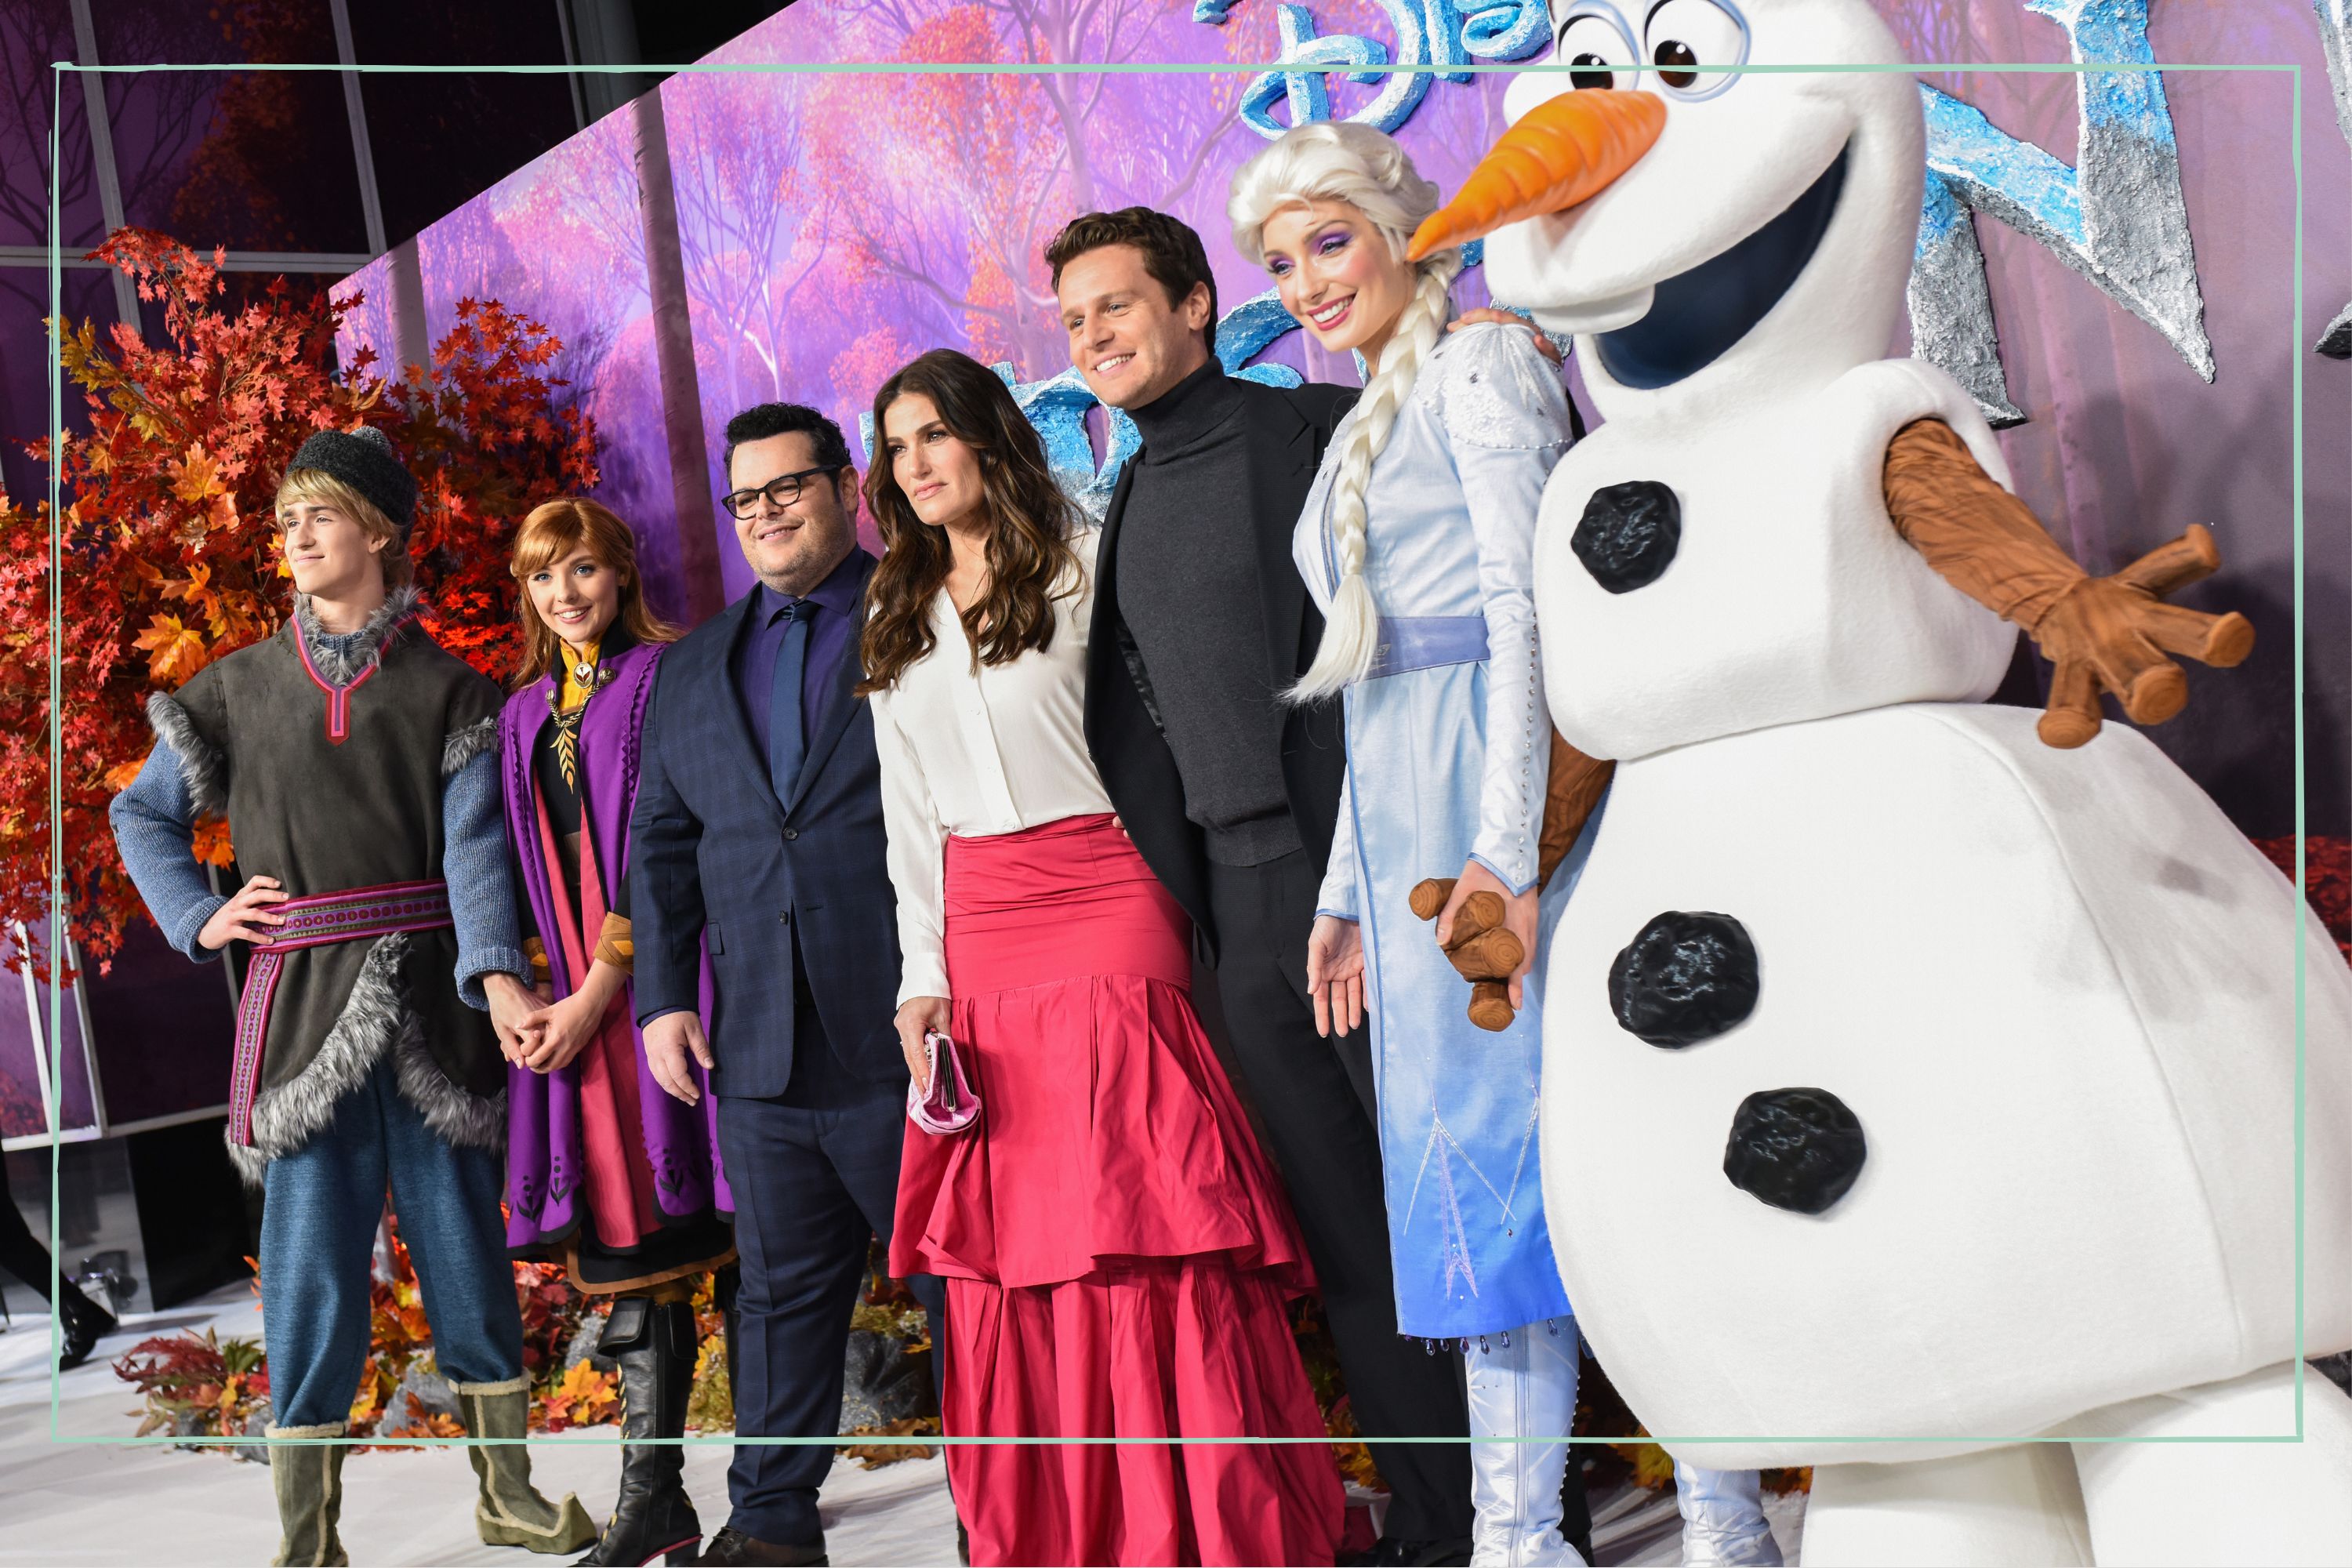 Idina Menzel says she 'hopes' Frozen 3 will be made